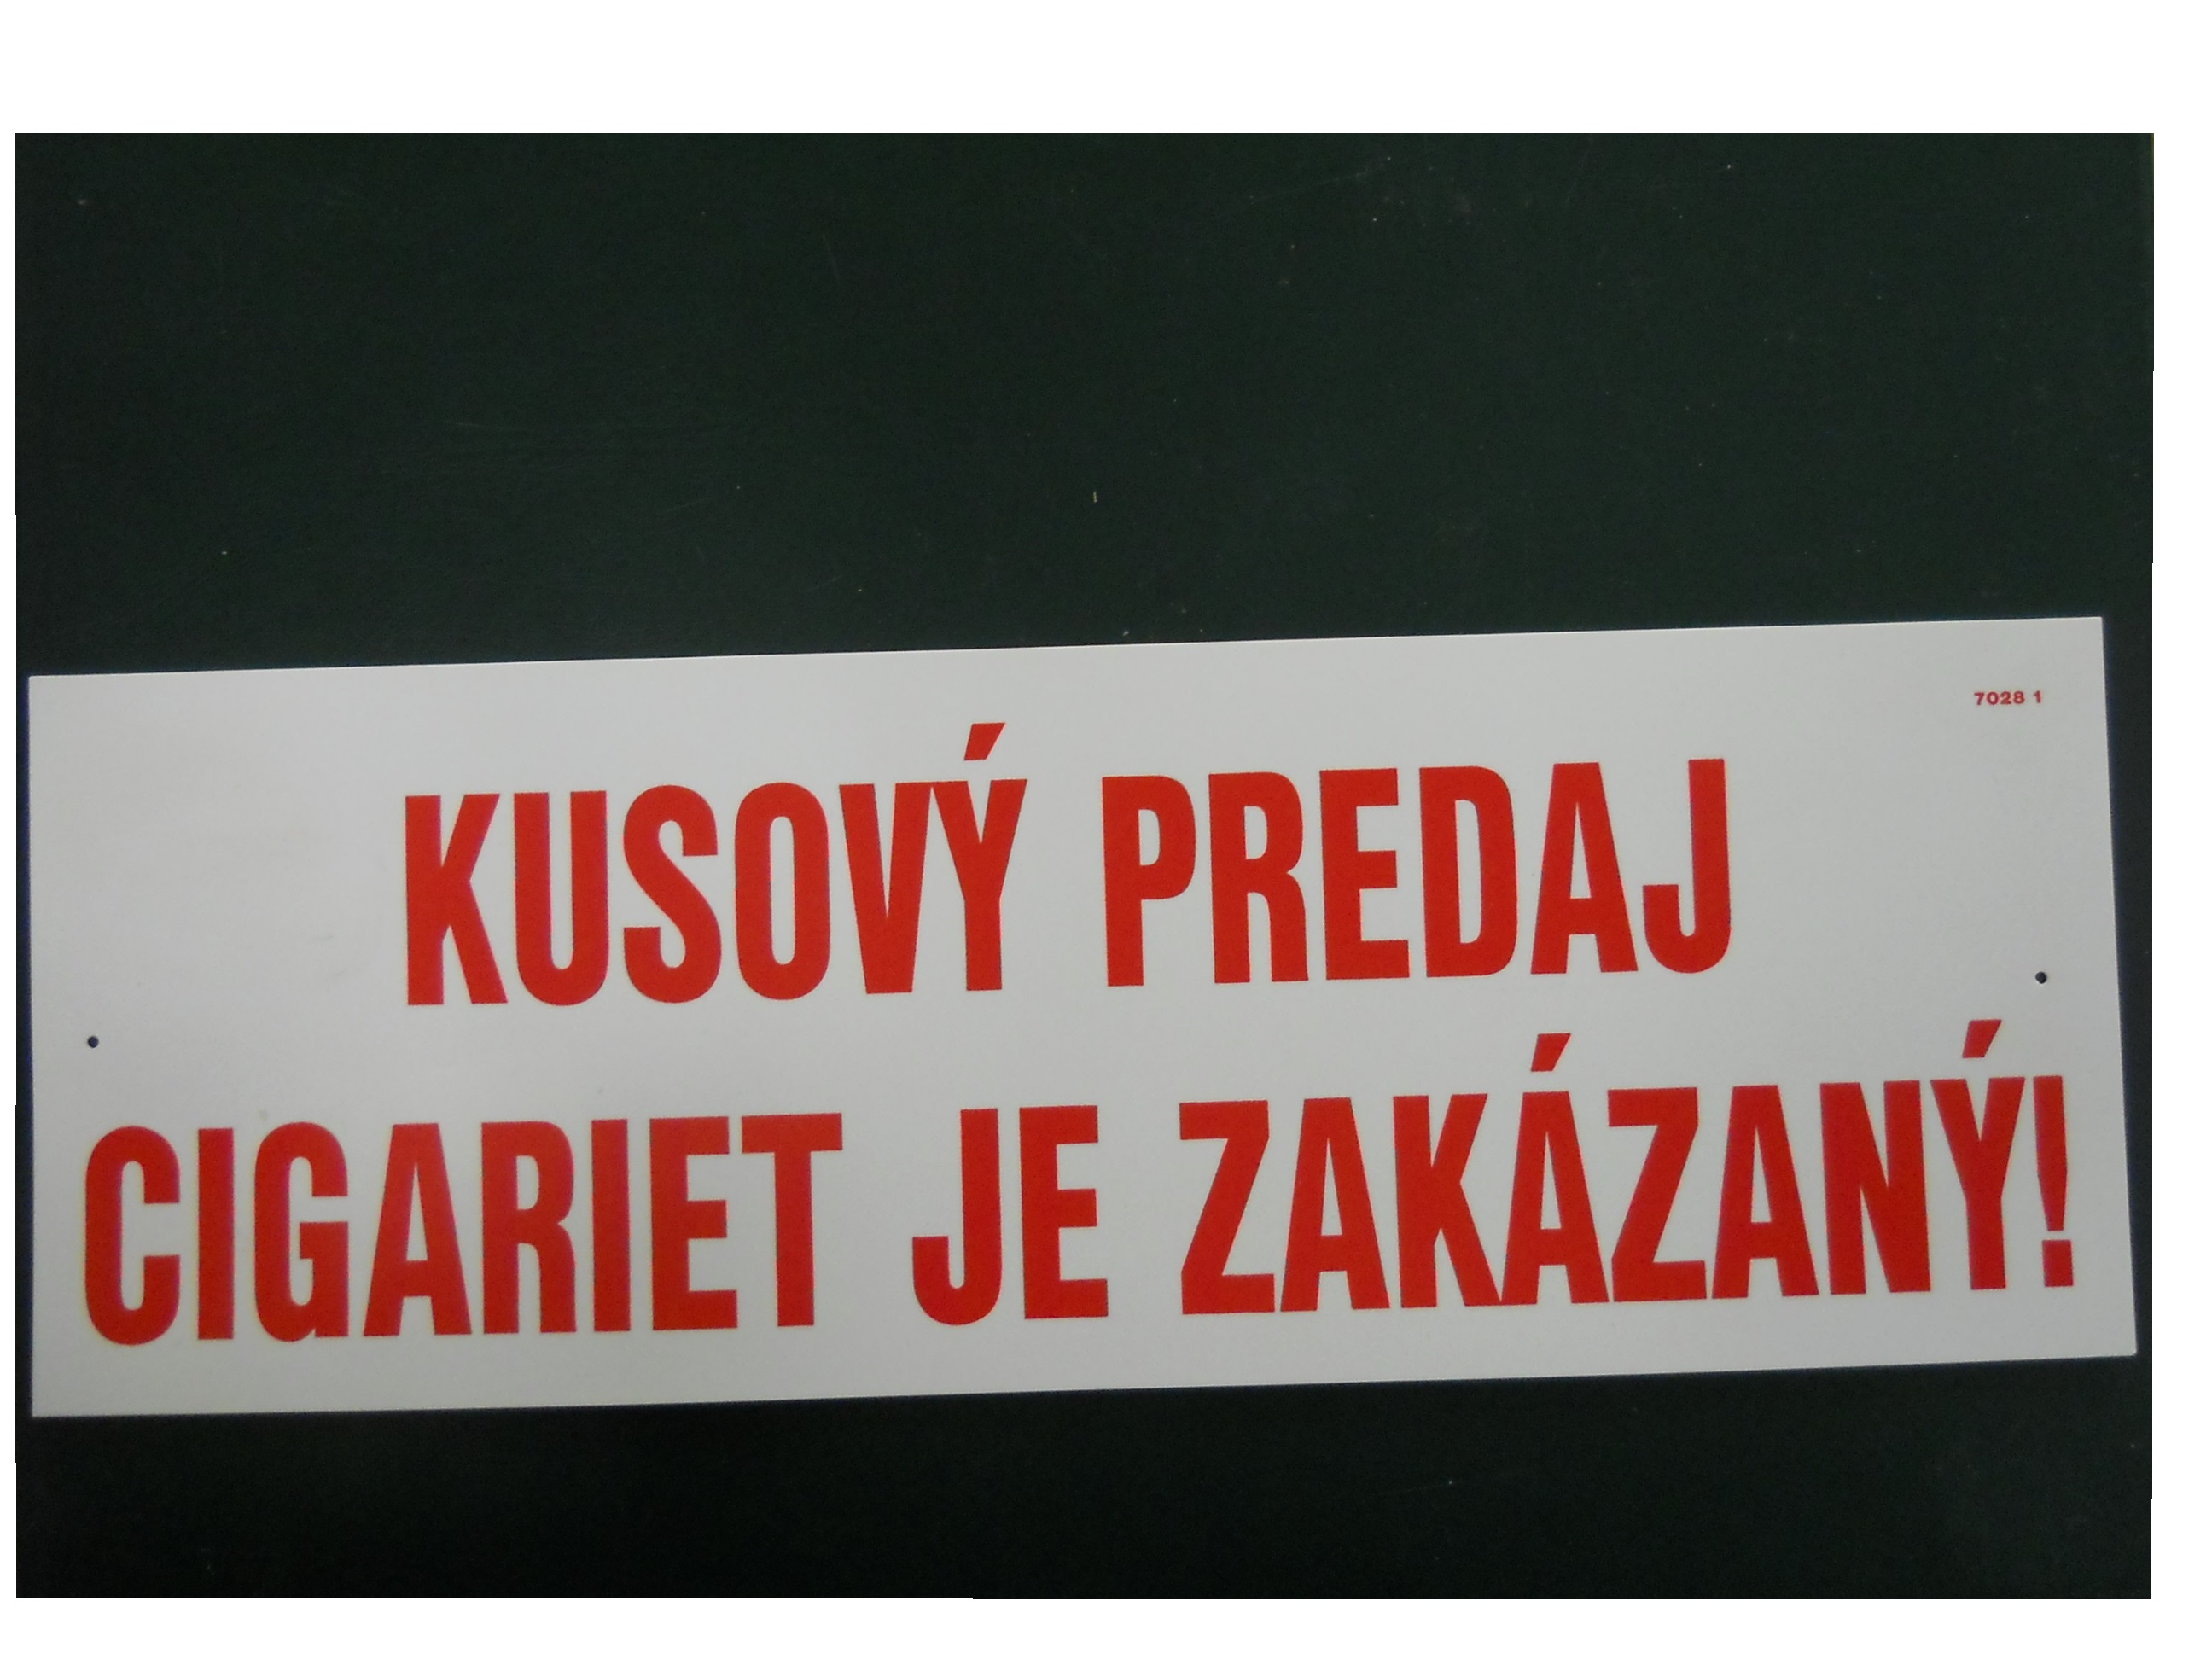 Bezpečnostná plast.tabuľka Kusový predaj cigariet je zakázaný!,10 x 29,5 cm 1,89